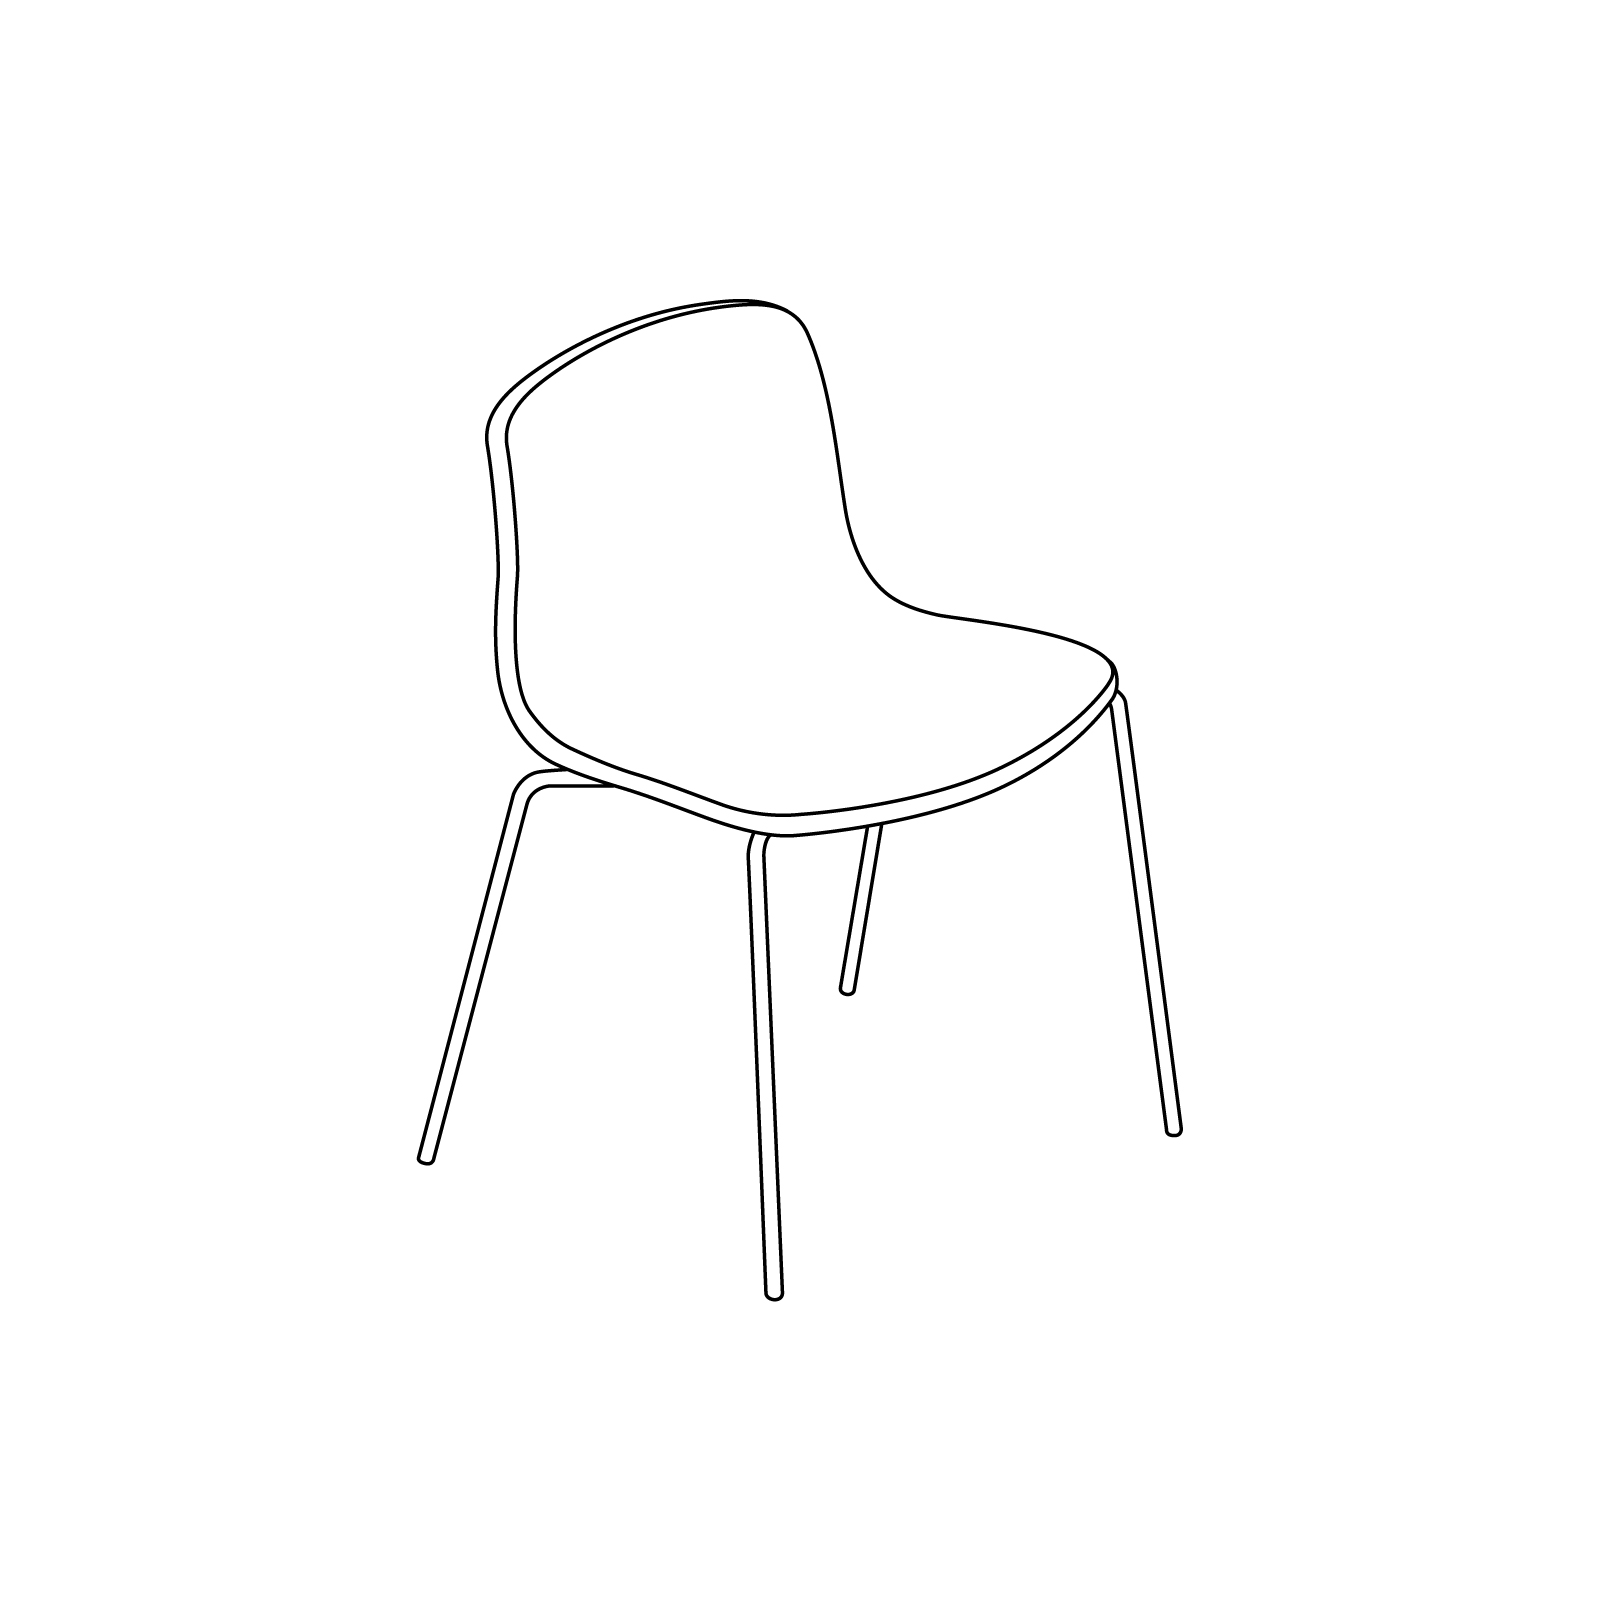 Um desenho de linha - About A Chair–Sem braços–Base empilhável em metal (AAC16, AAC17)